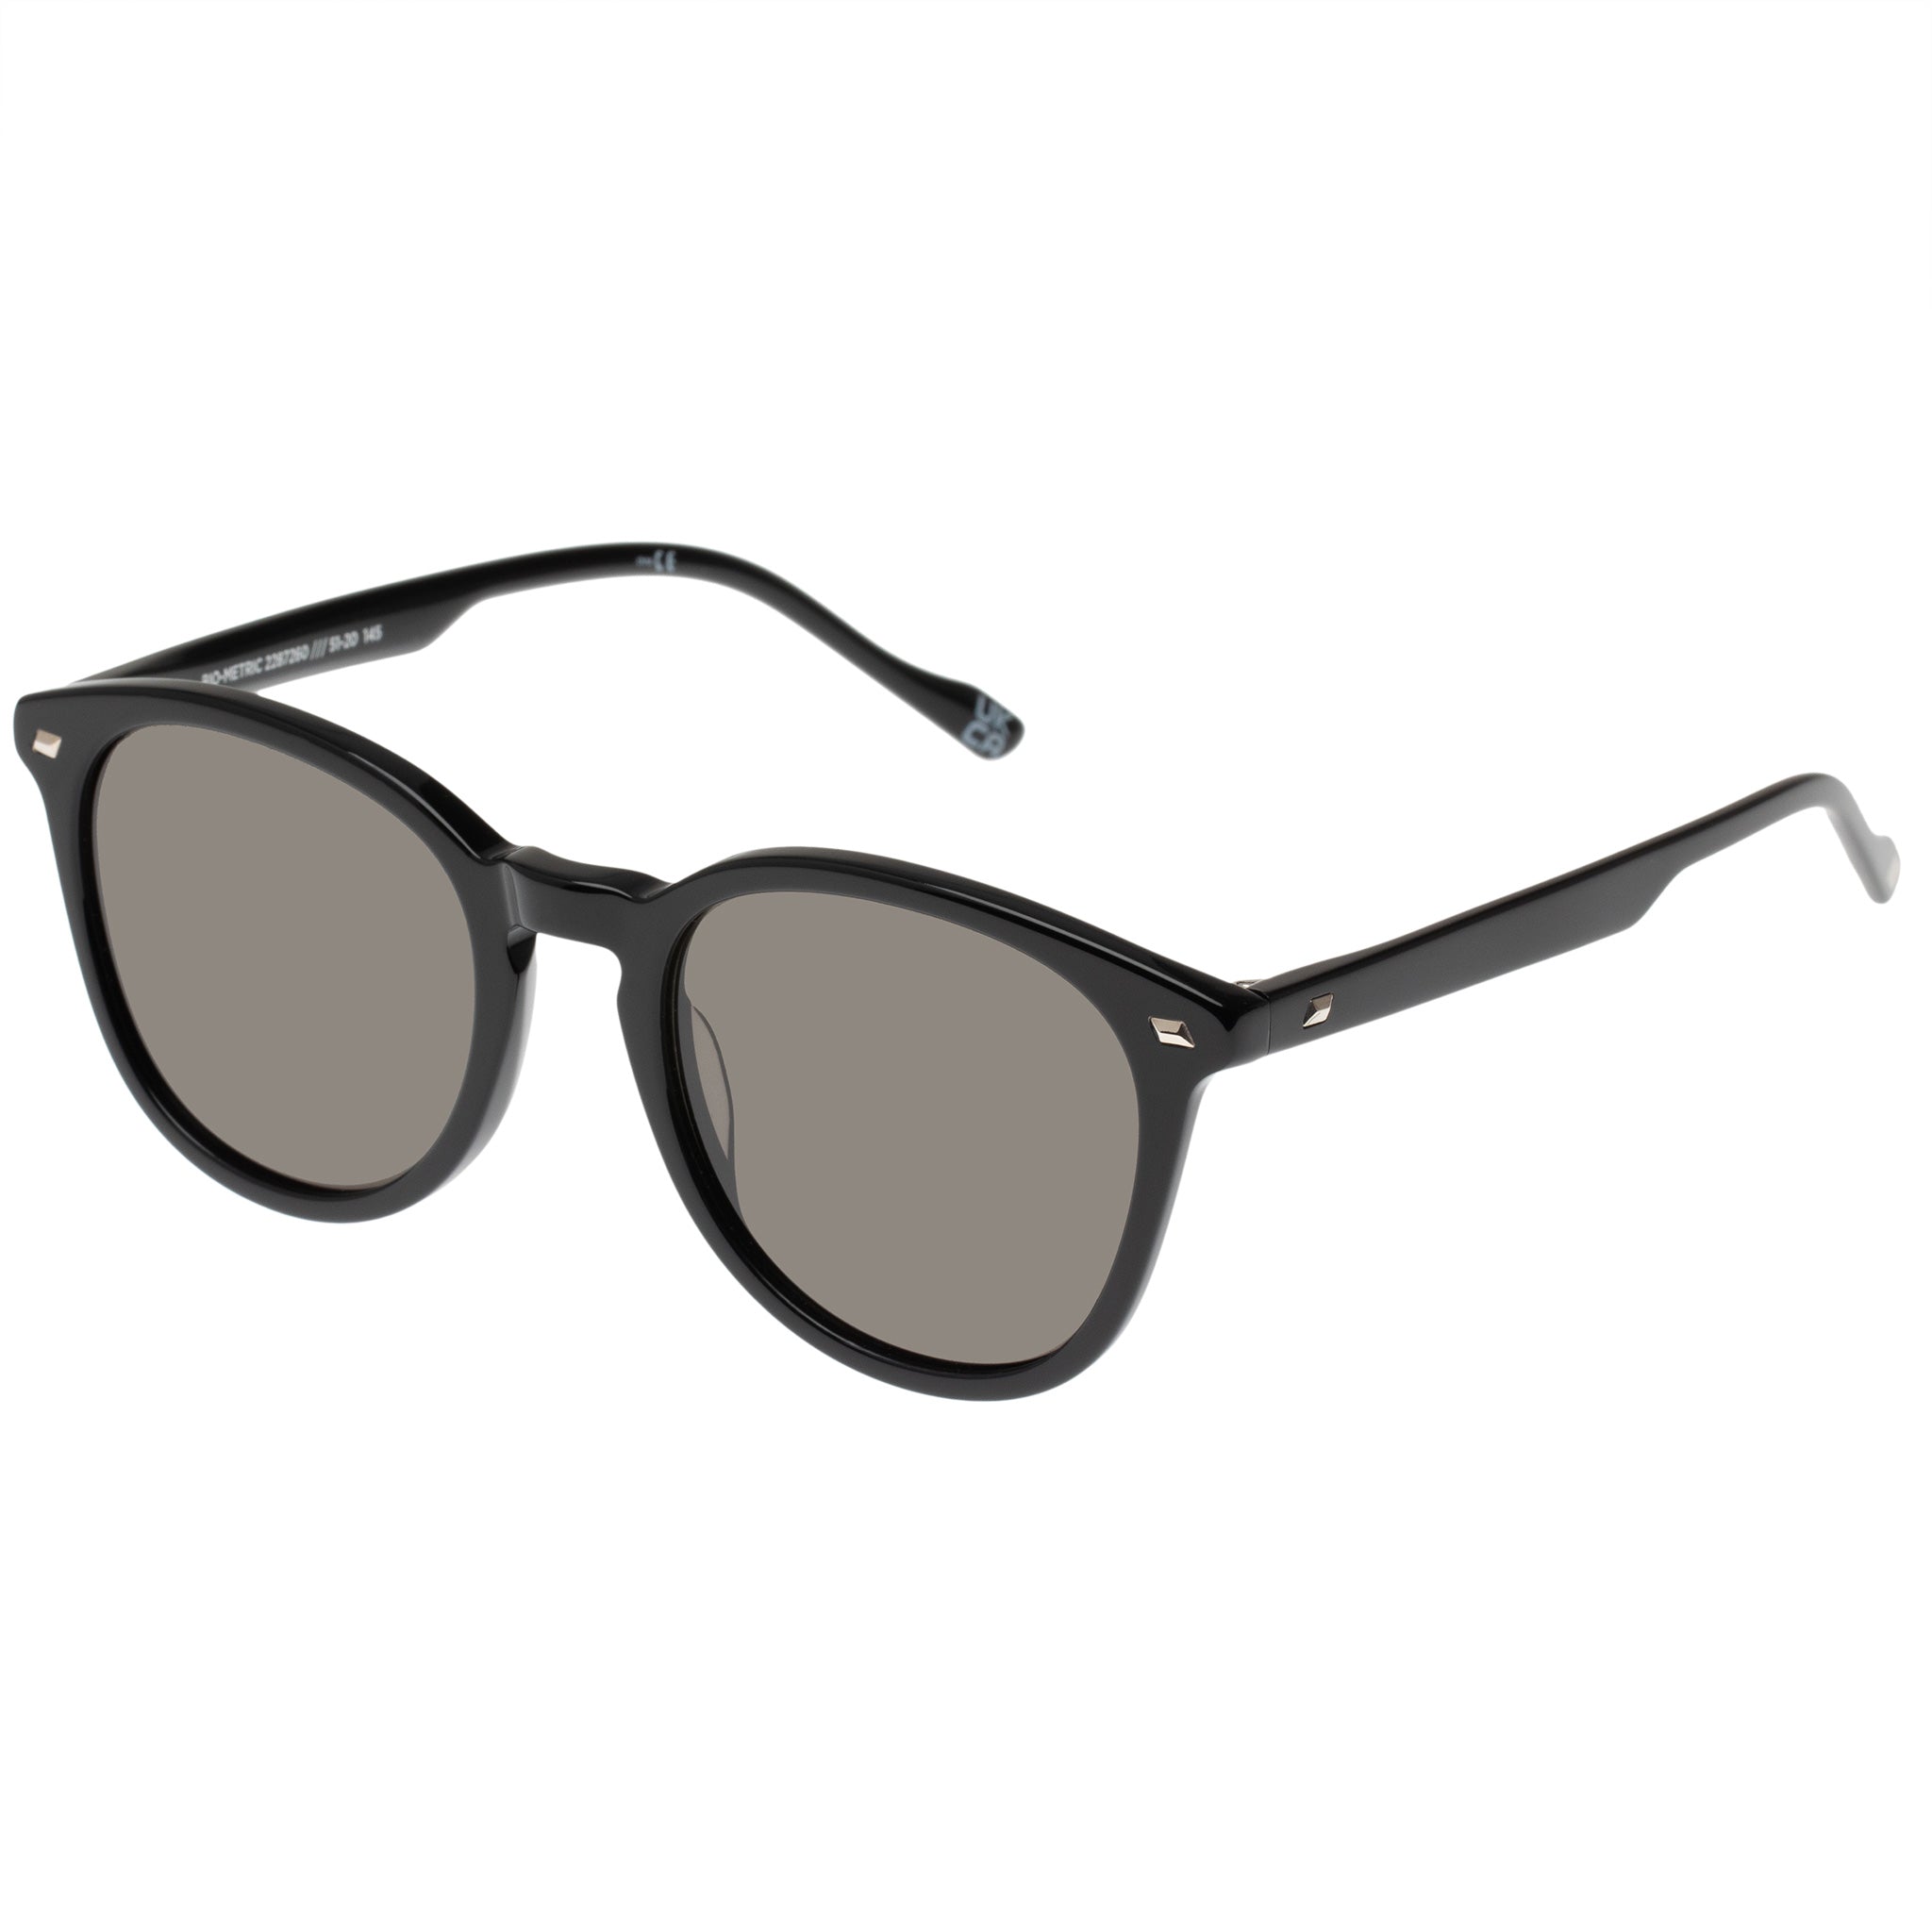 Bio-Metric Black Uni-sex Round Sunglasses | Le Specs